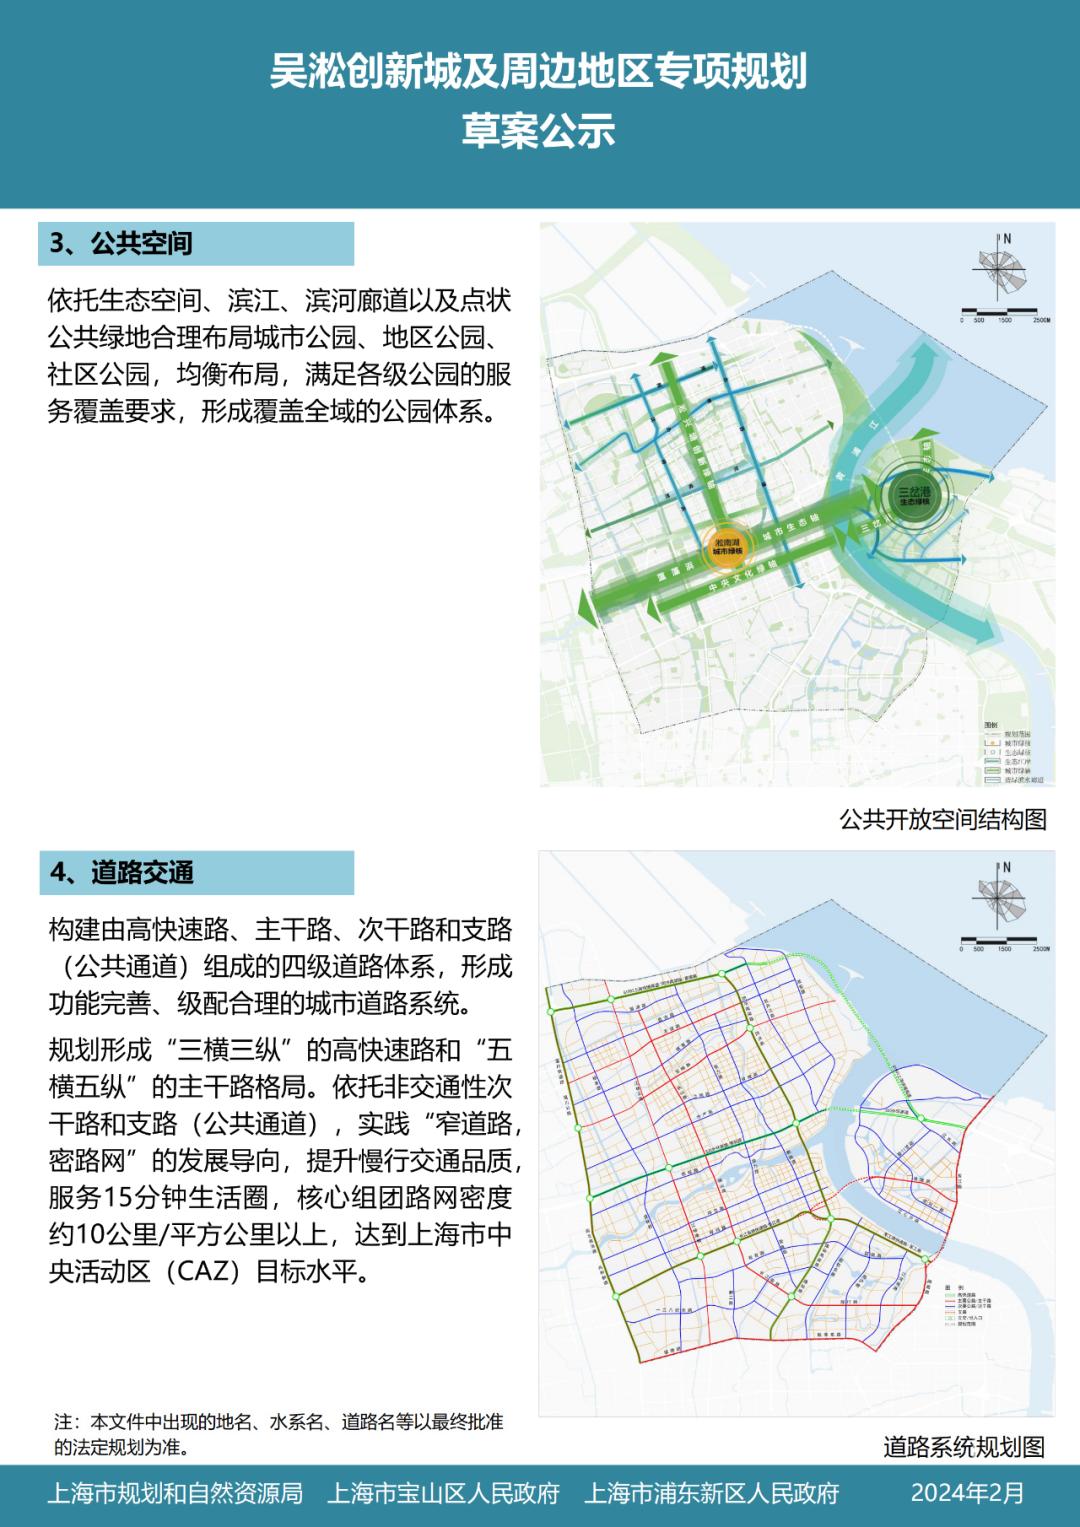 【重磅】《吴淞创新城及周边地区专项规划》草案公示